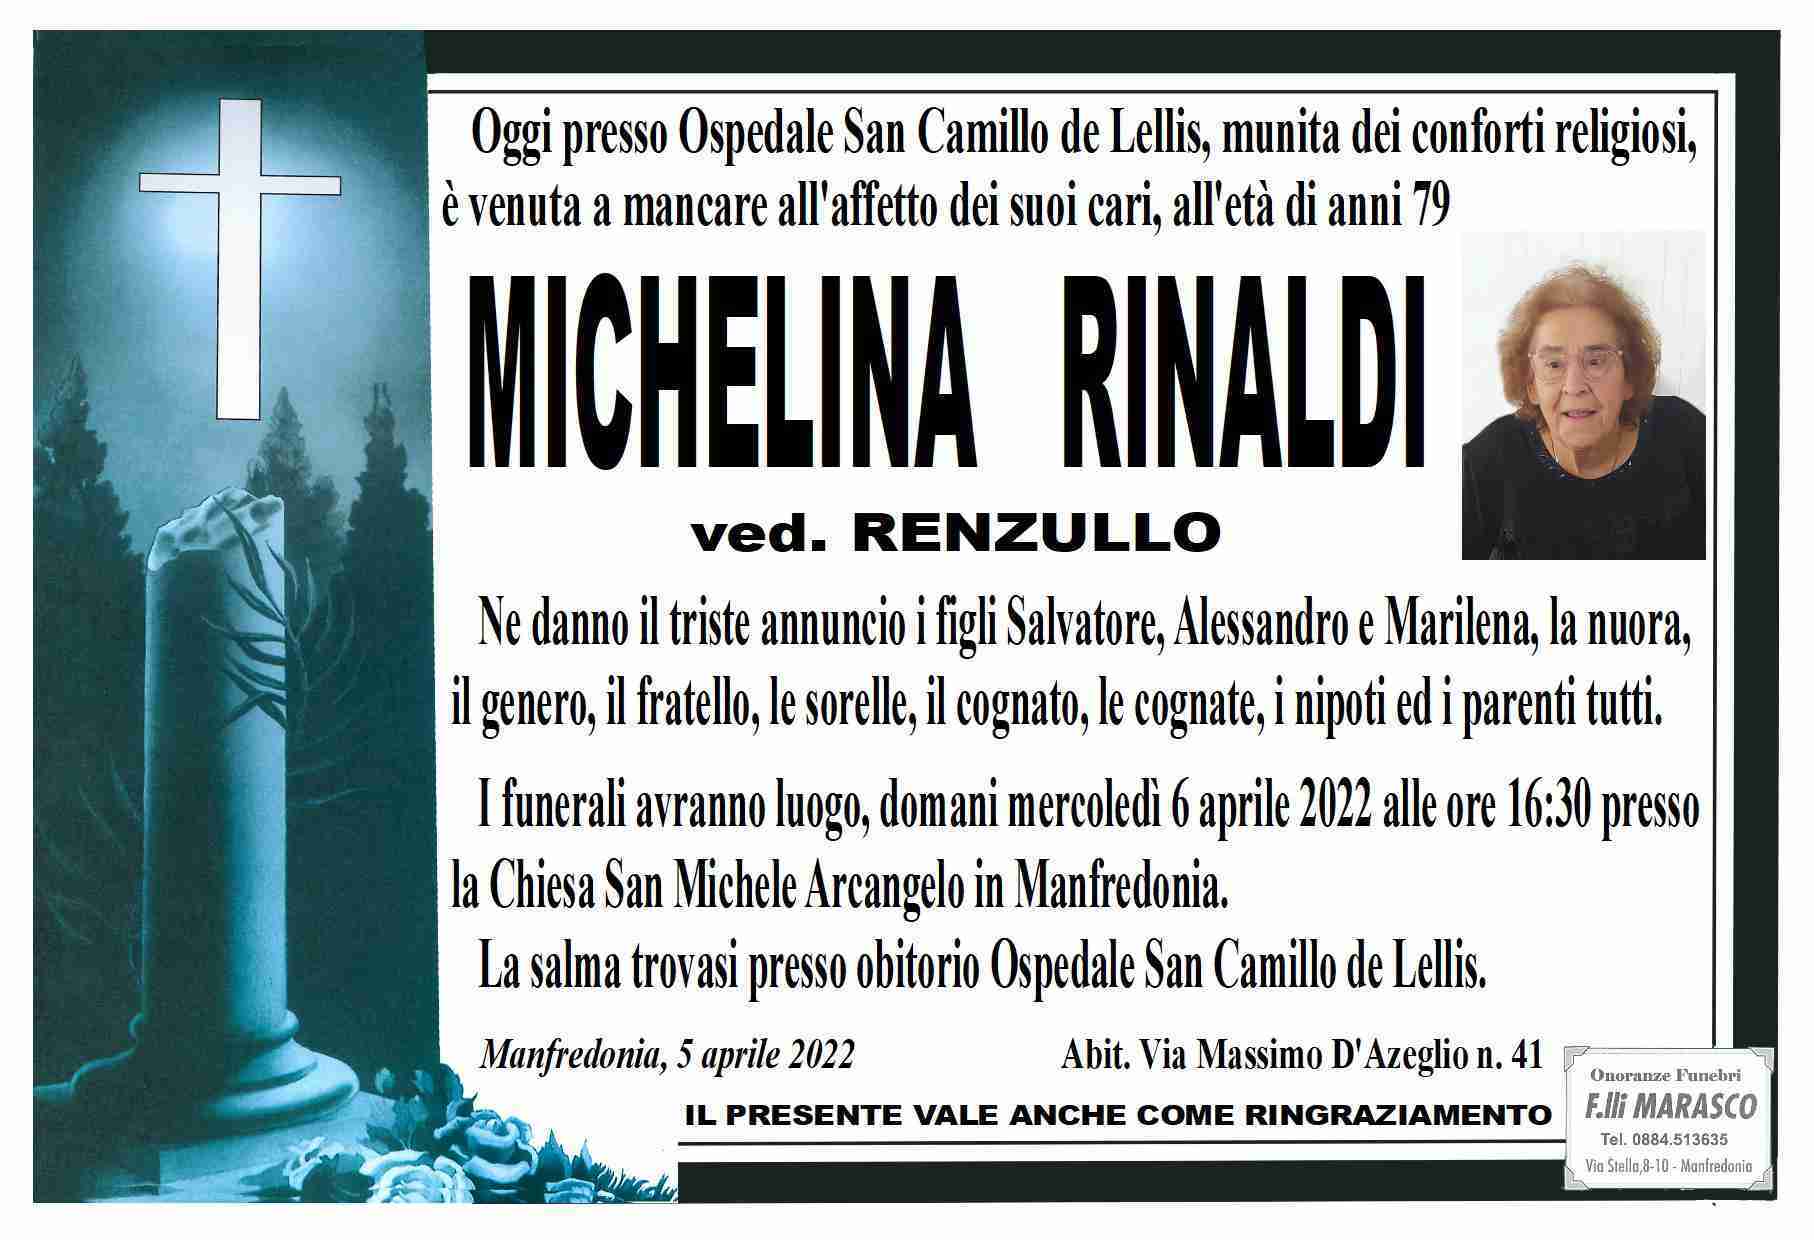 Michelina Rinaldi